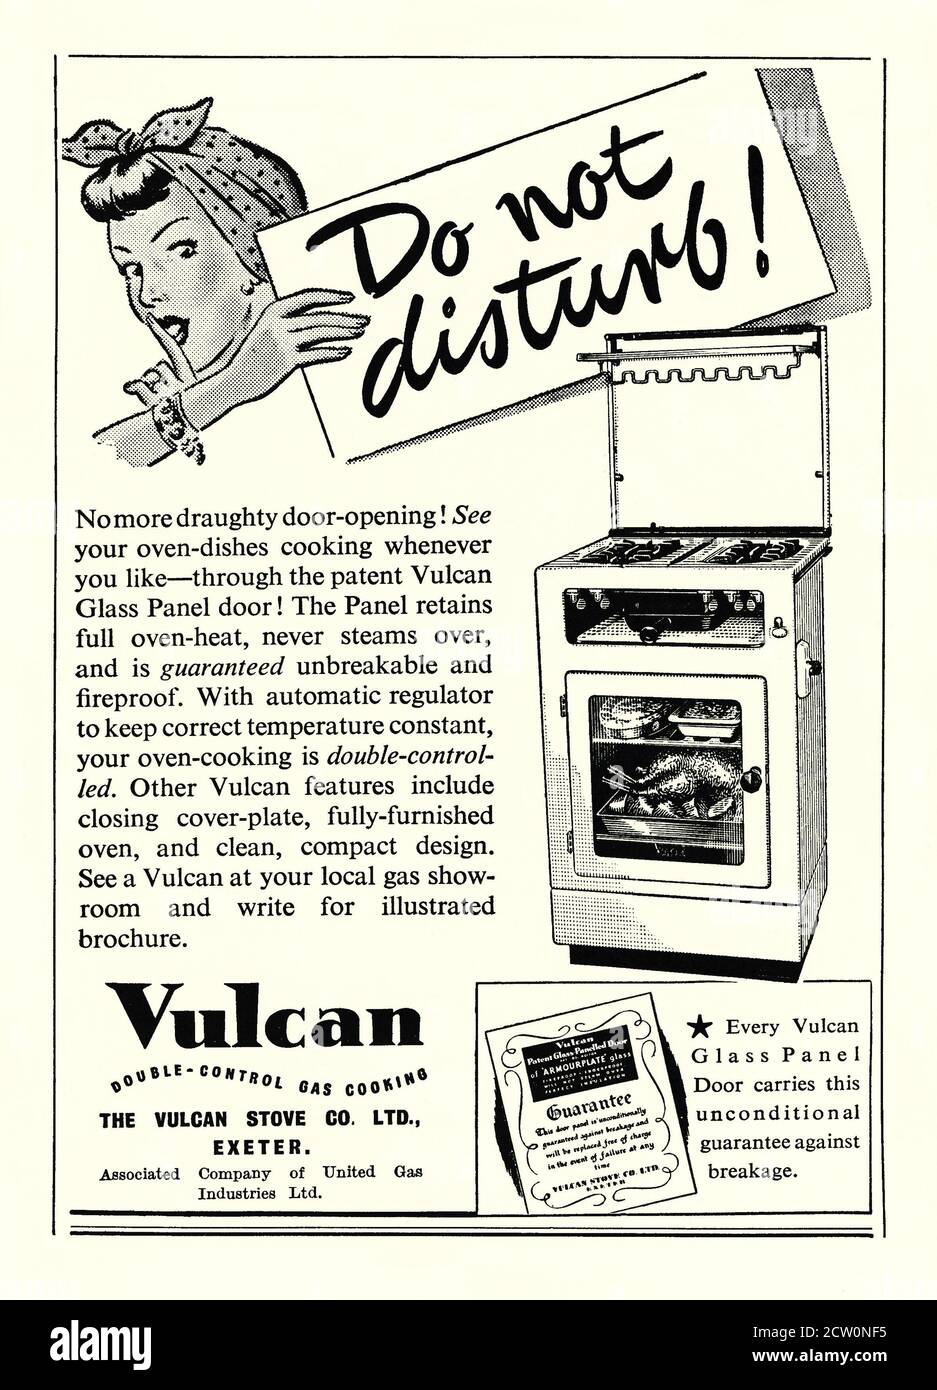 Une publicité dans un magazine 1951 pour une cuisinière à gaz Vulcan. Le symbole « ne pas déranger » se rapporte à la boda en verre du four, évitant ainsi d'ouvrir la porte pour voir comment la cuisson se déroule. Le nom Vulcan est apparu pour la première fois en 1890 avec la formation de la Vulcan Gas Heating Company. La société domestique d'appareils électroménagers faisait partie de United Gas Industries Ltd et était basée à Exeter, Devon, Angleterre, Royaume-Uni – graphiques vintage des années 1950. Banque D'Images